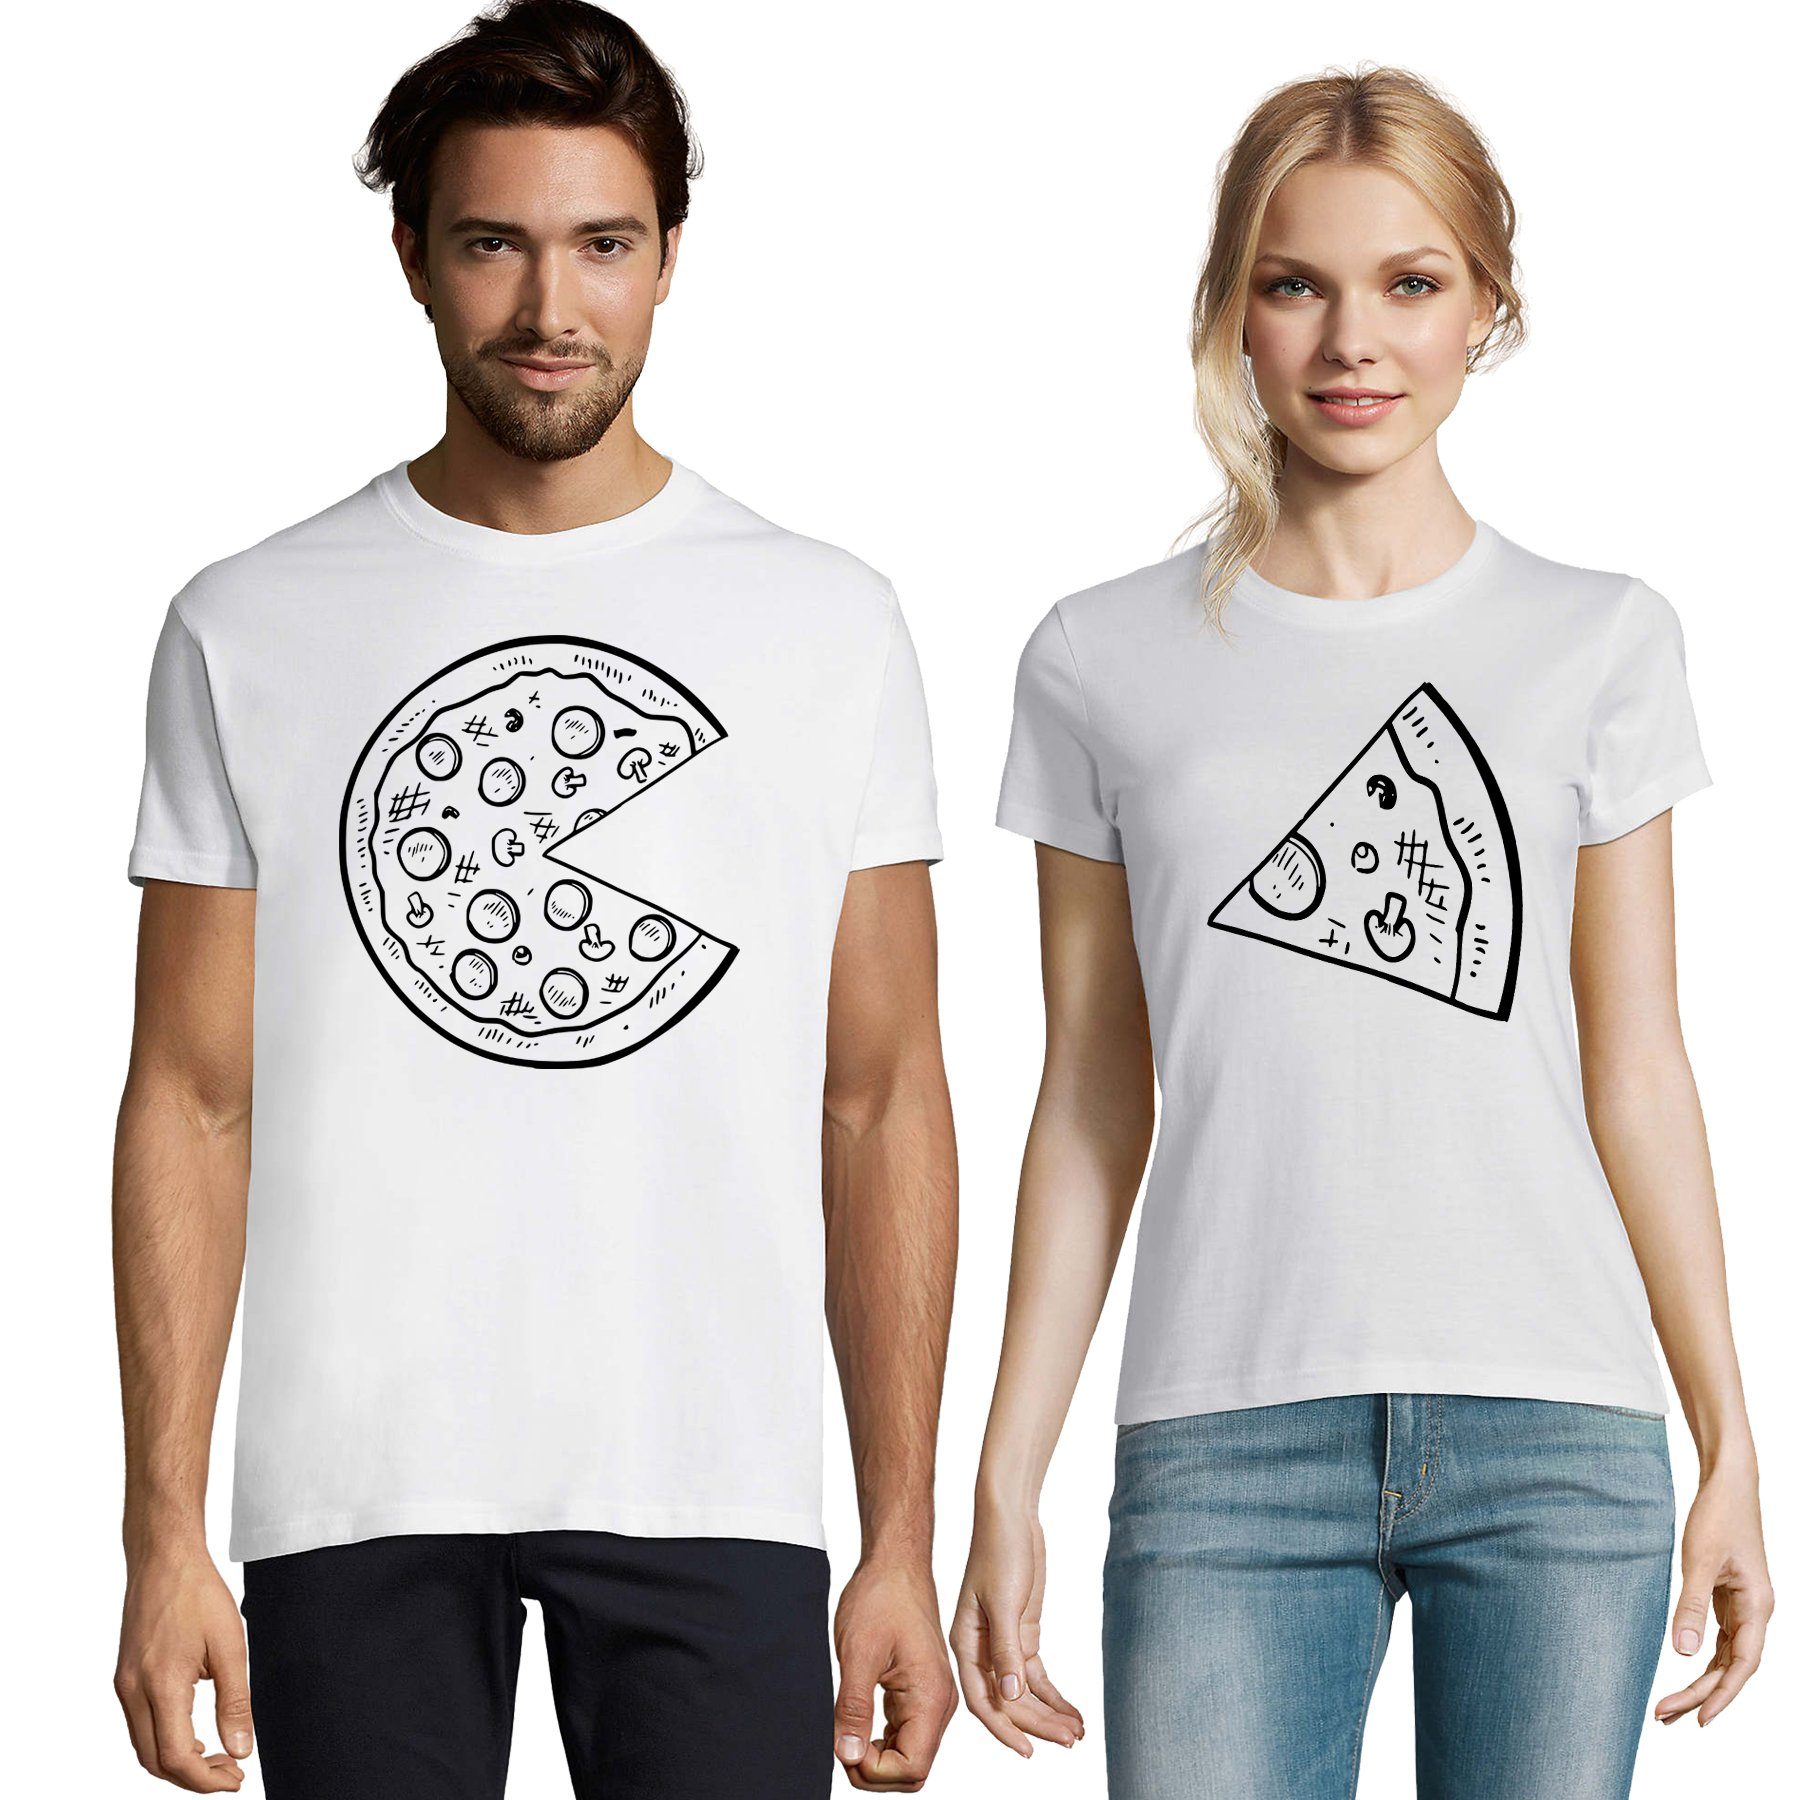 Valentin T-Shirt Pärchen & Brownie Weiß Blondie BFF Friends Pizza Stück Partner Damen Shirt